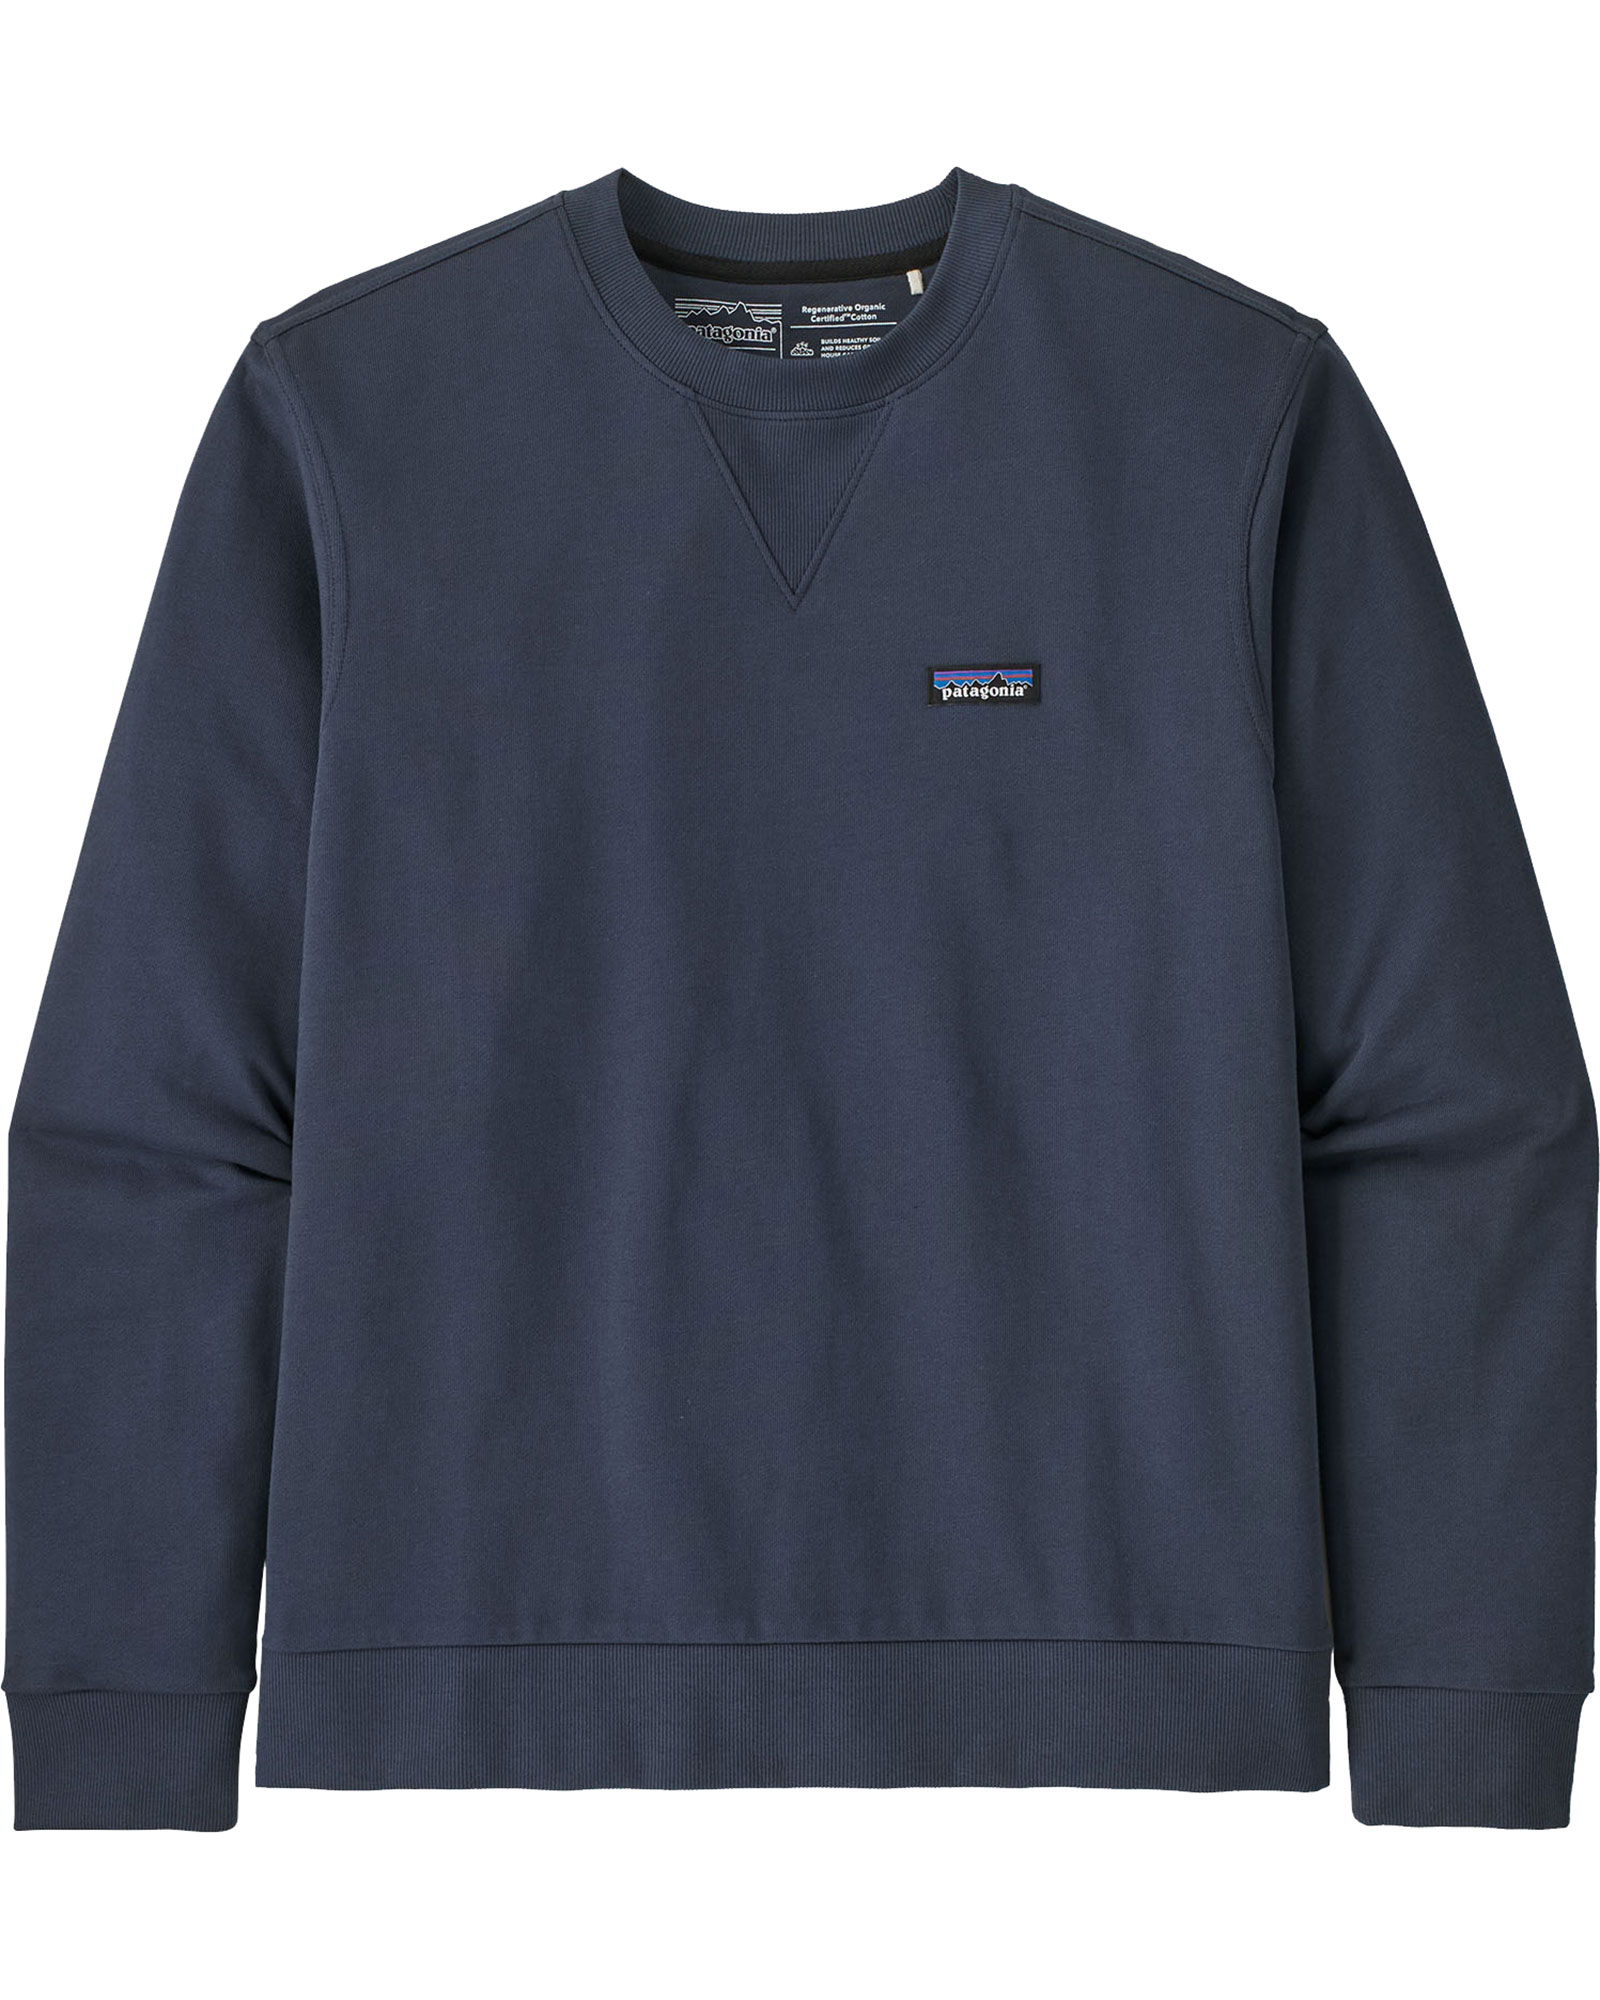 Patagonia Regen Cotton Men’s Crewneck Sweatshirt - Ink/Smolder S